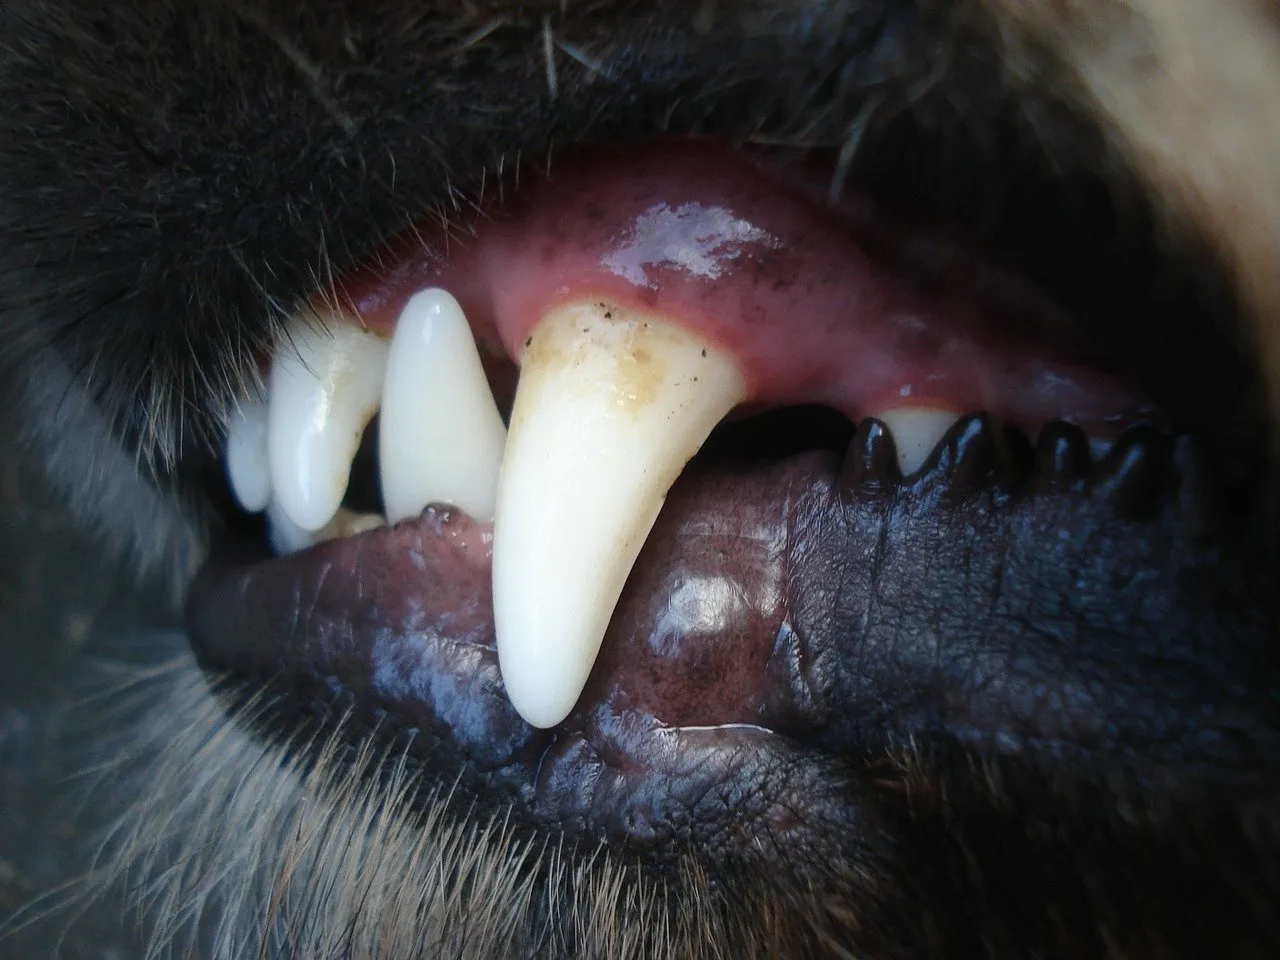 Pulizia denti del cane: come eseguirla perfettamente